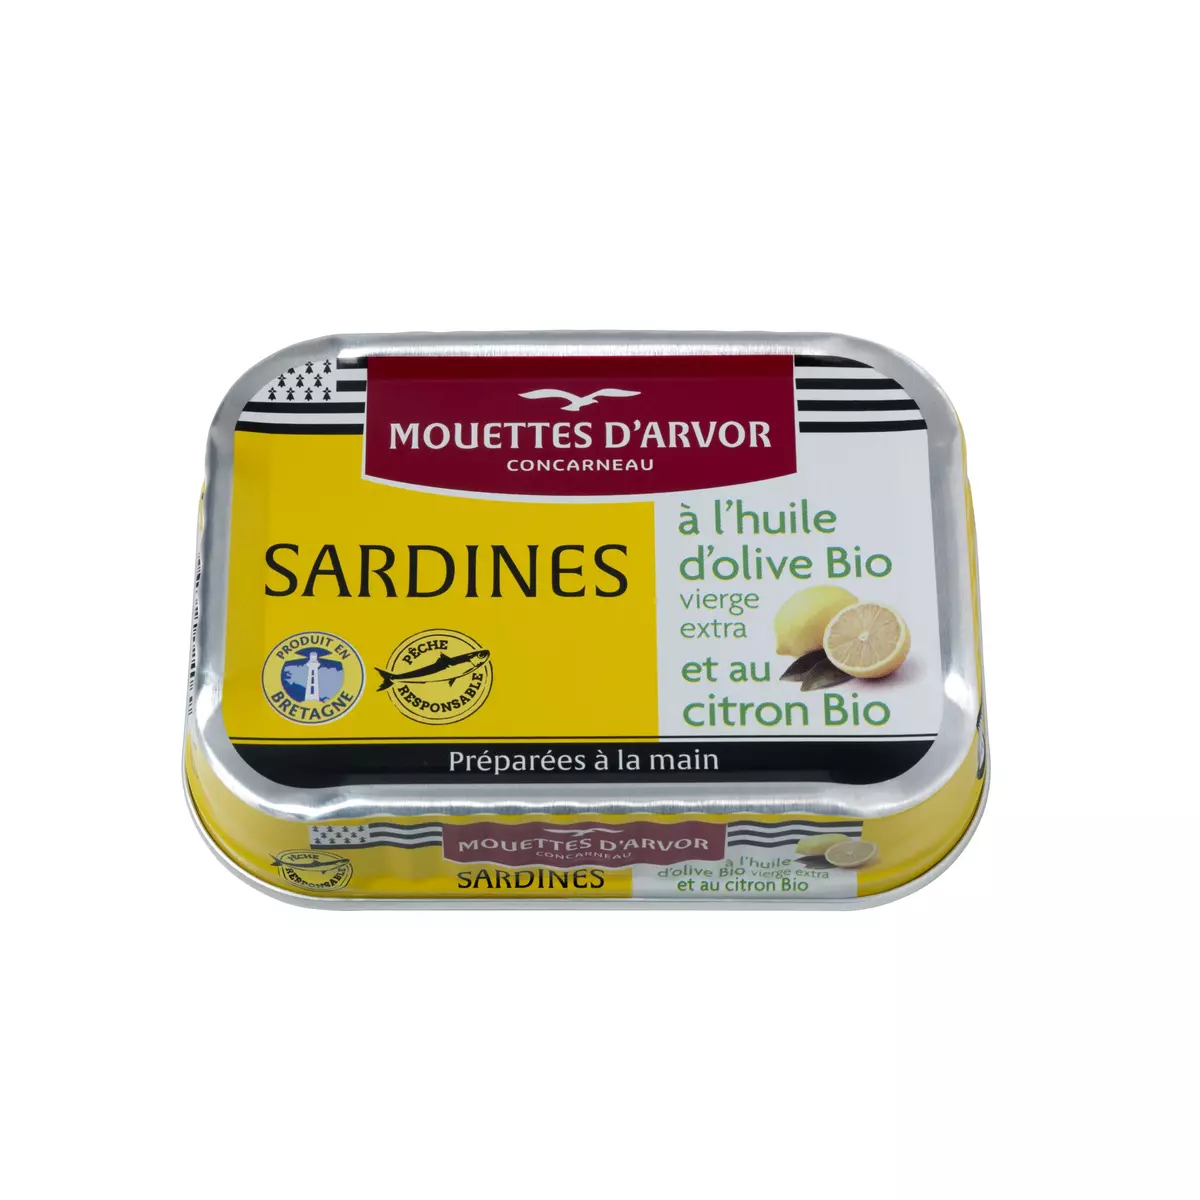 MOUETTES D'ARVOR Sardines à l'huile d'olive vierge extra et citron 115g